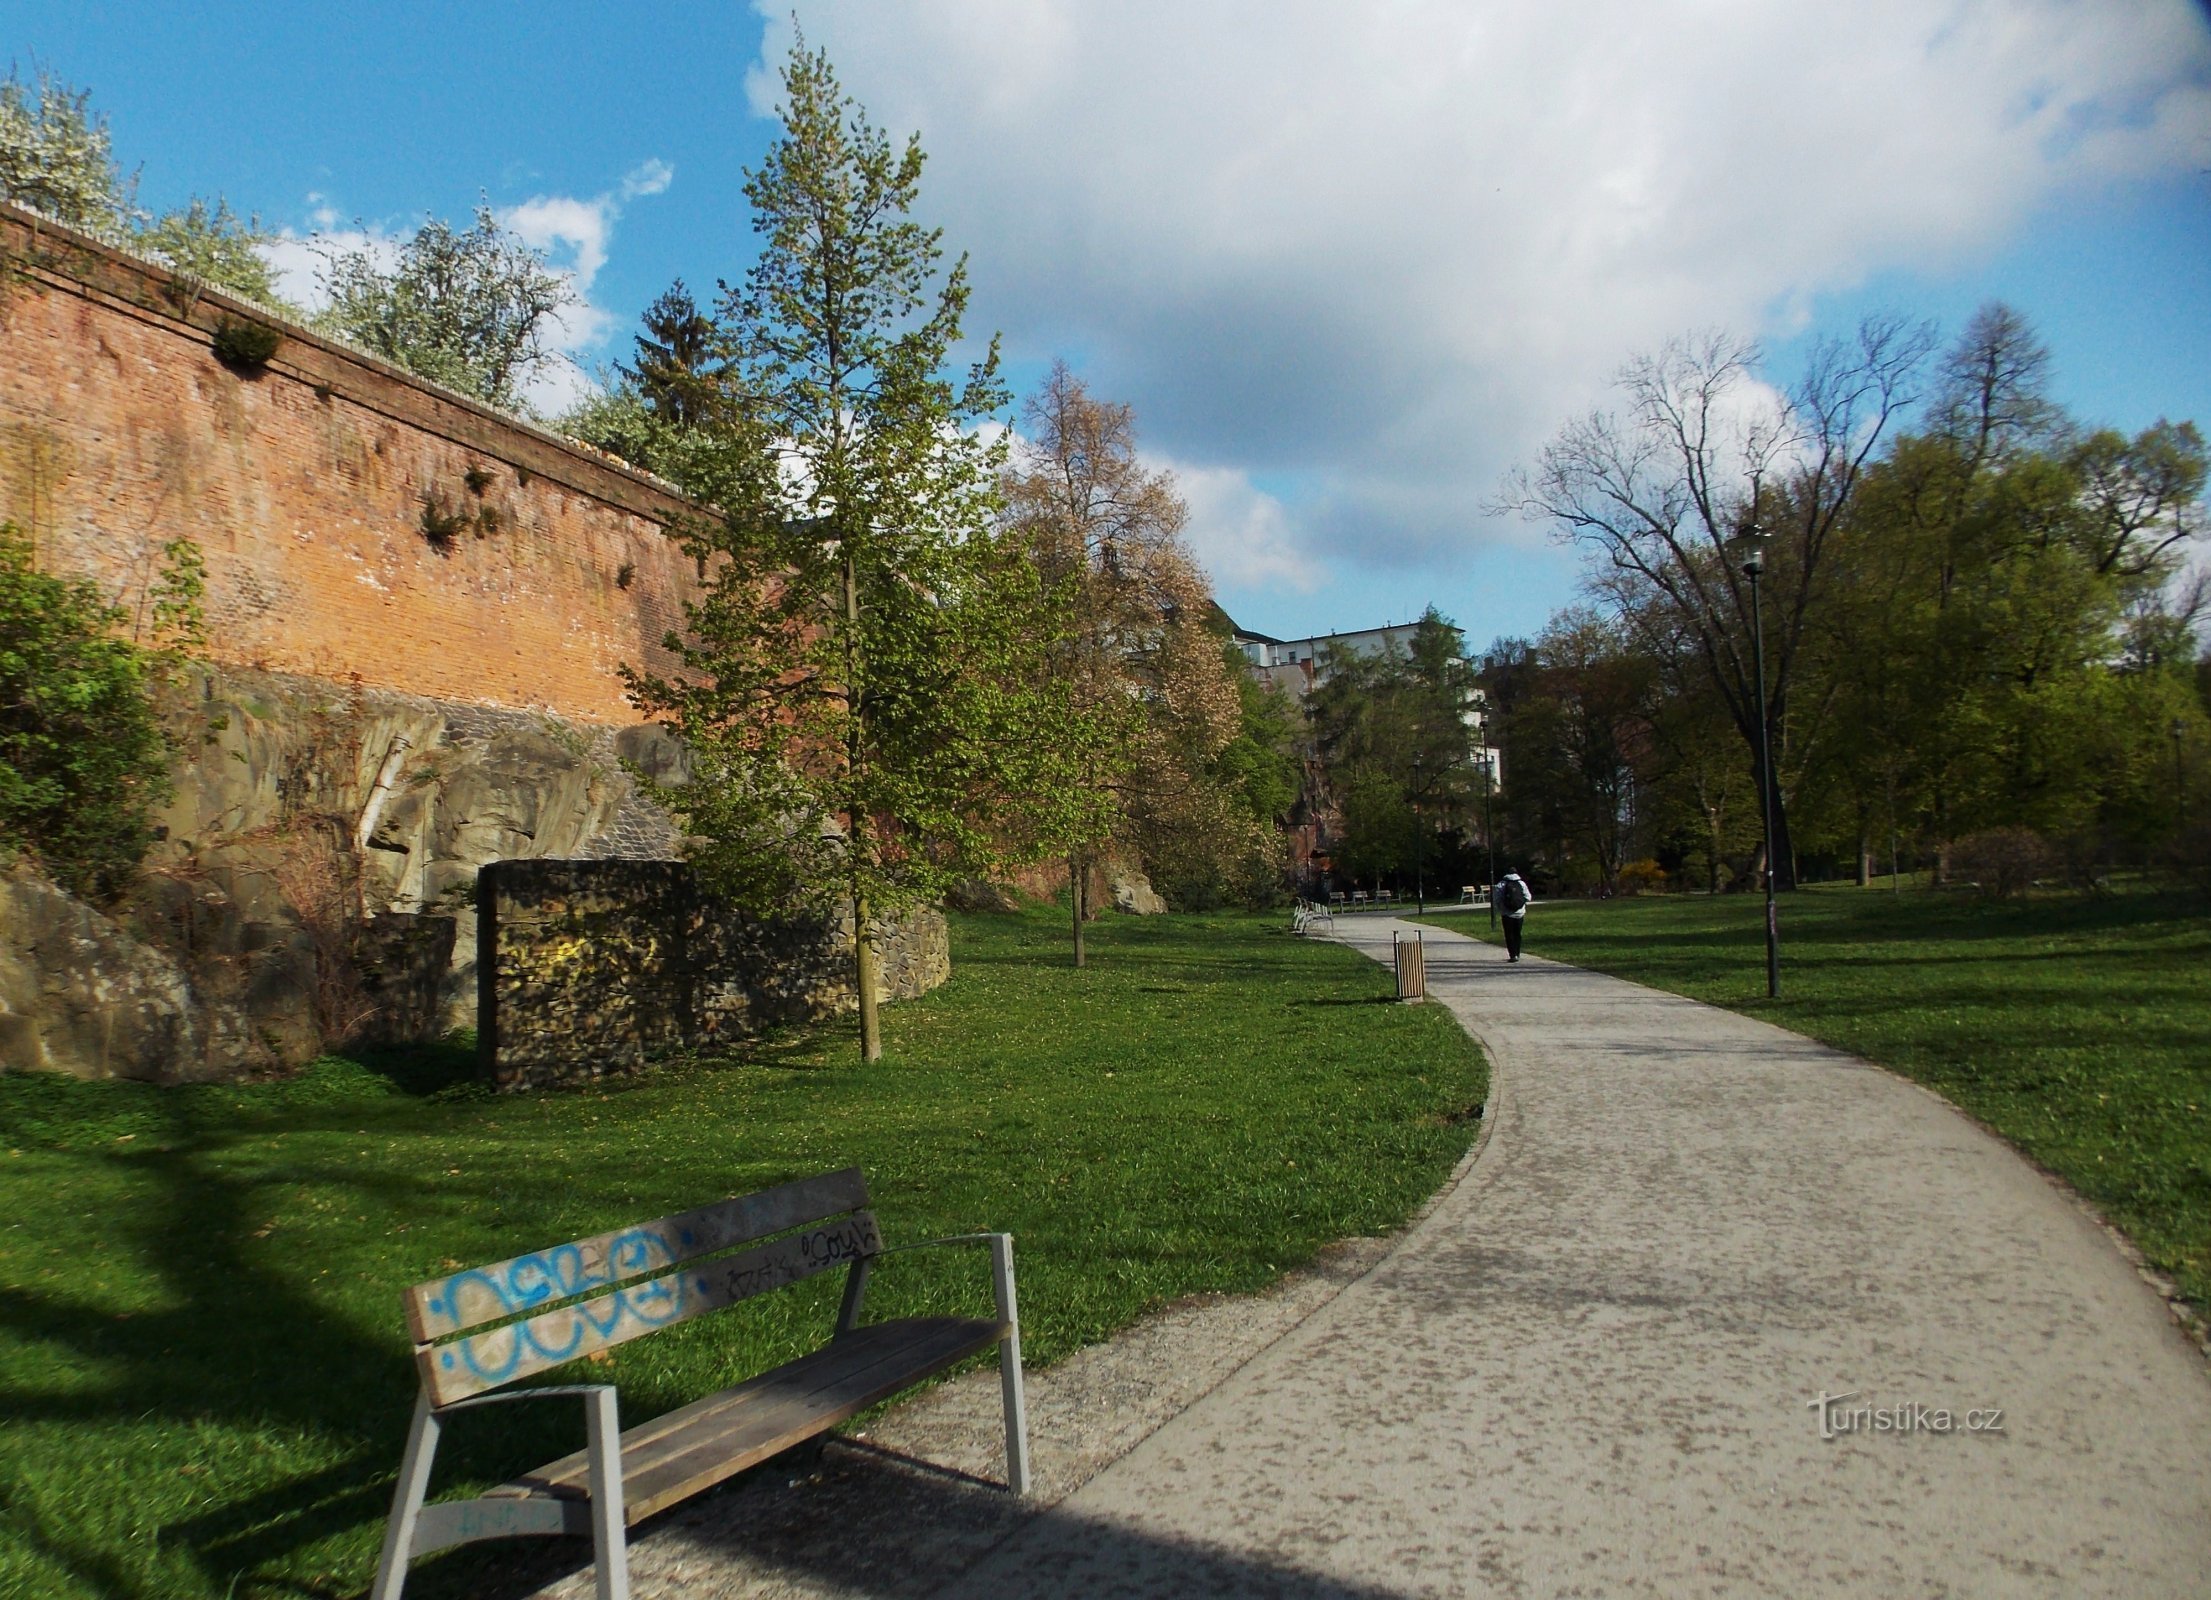 Olomouc, đi bộ qua công viên thành phố - Bezručovy Sady